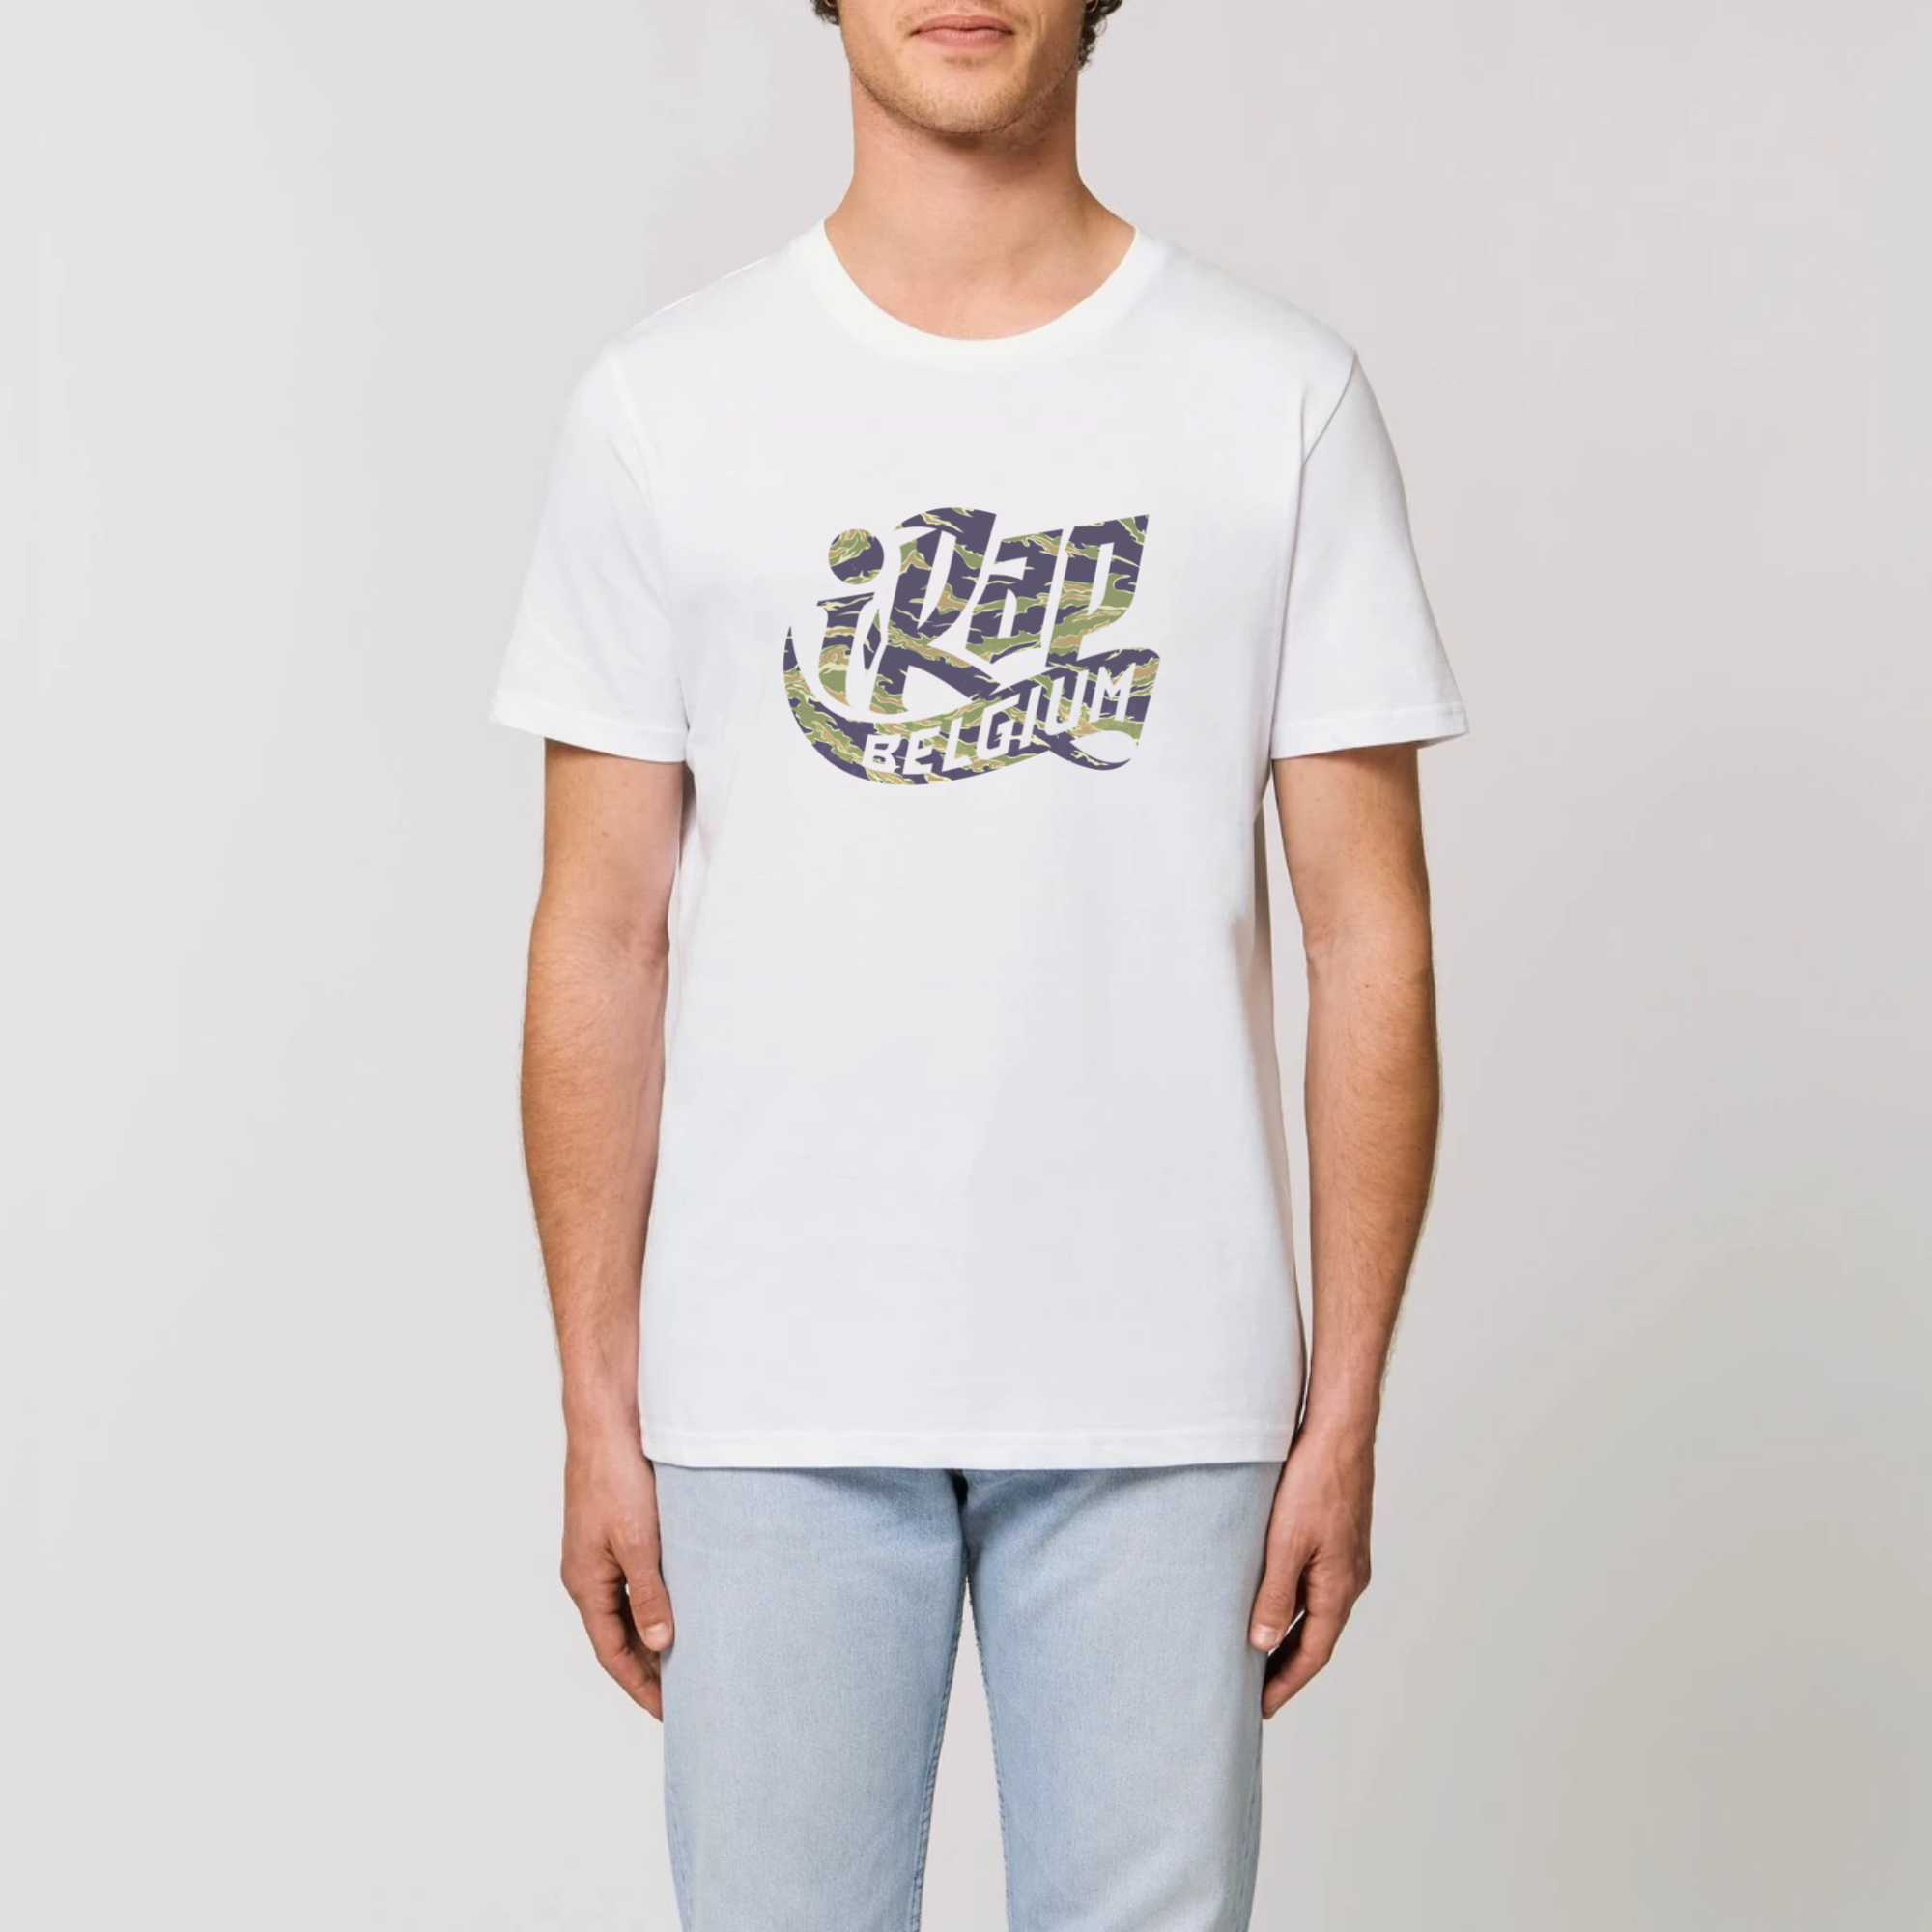 T-Shirt - I RAP BELGIUM